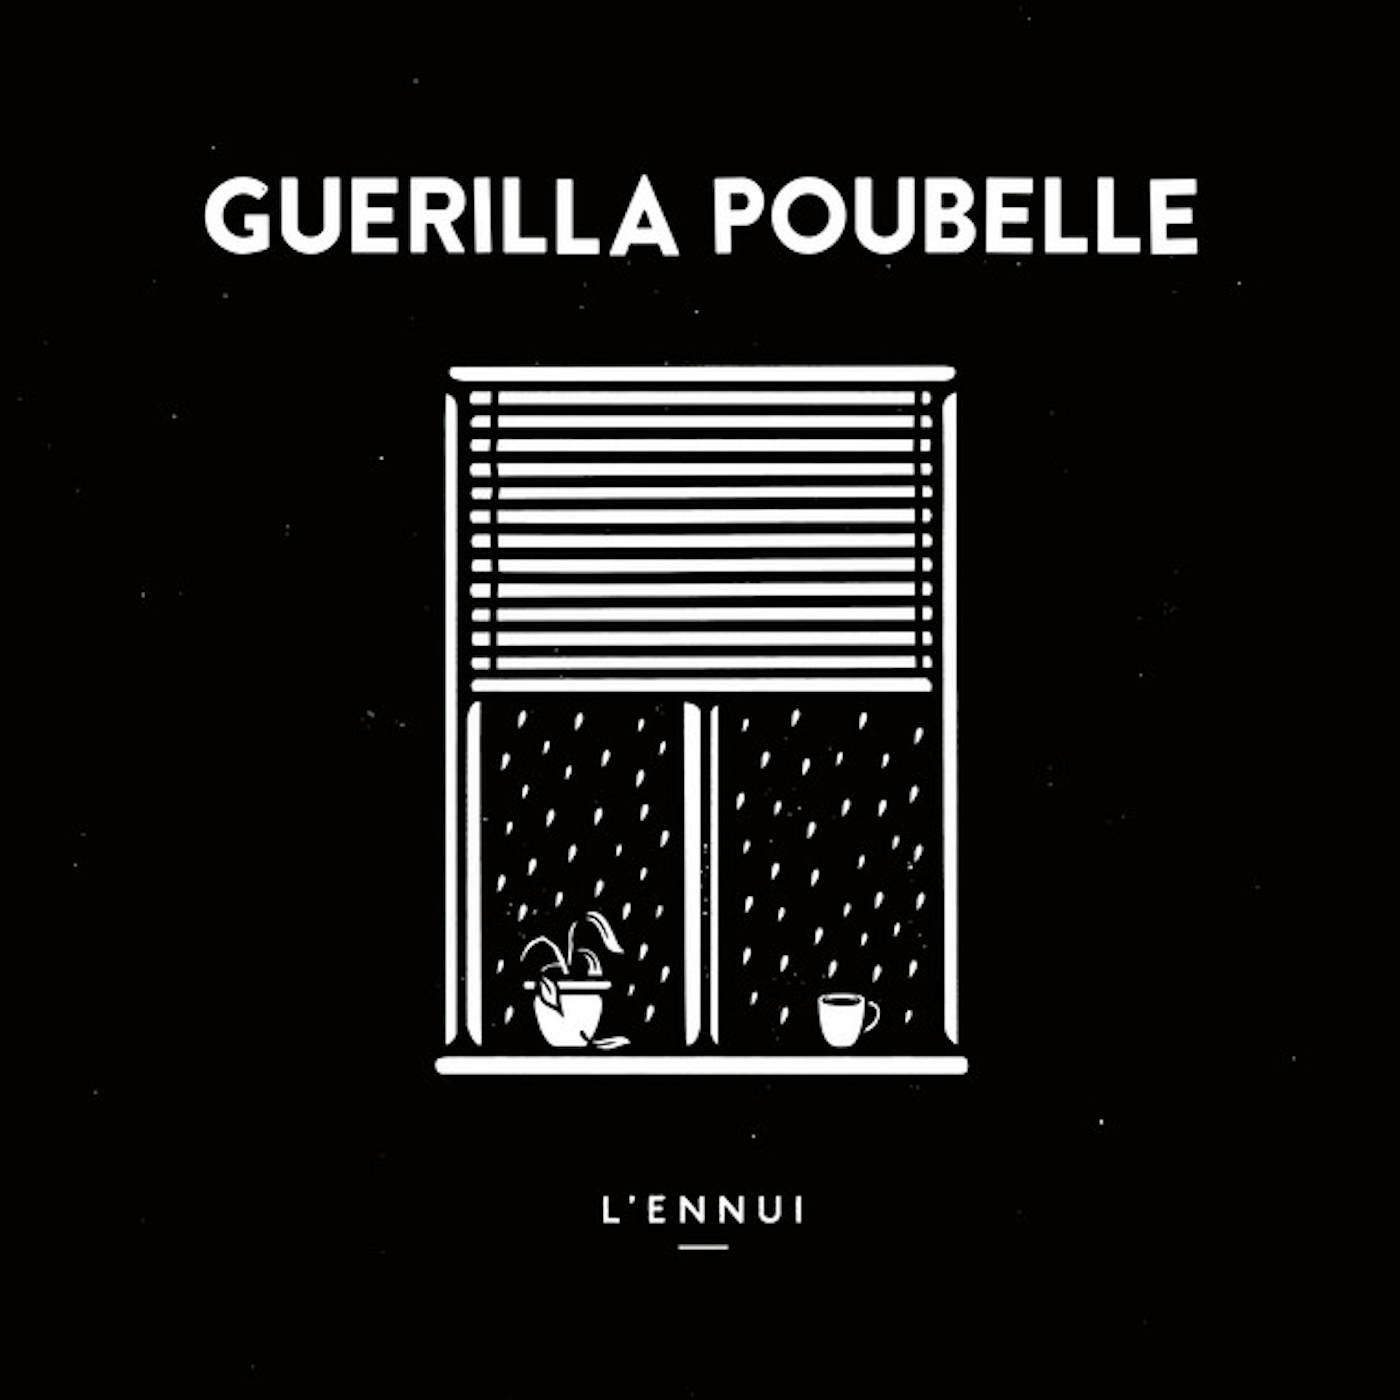 Guerilla Poubelle L'ENNUI CD